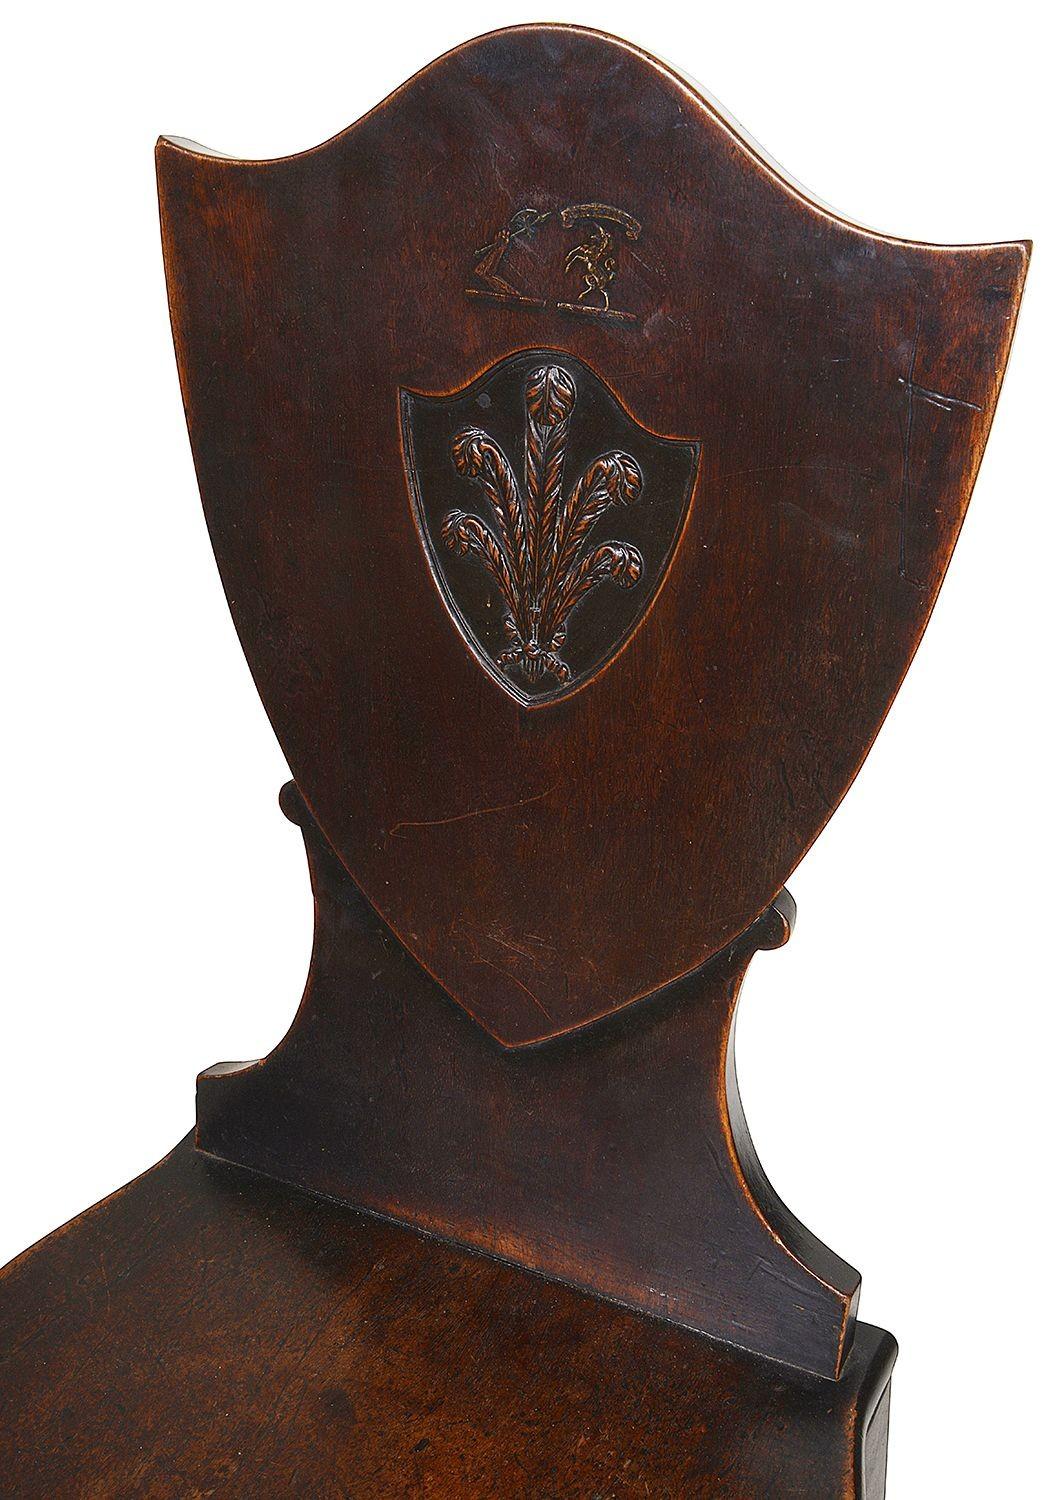 Ein Paar Mahagoni-Dielenstühle aus dem 18. Jahrhundert von guter Qualität, jeweils mit Rückenlehne und einem Einsatz, der ein gemaltes Wappen über einem geschnitzten Prinz-von-Wales-Ploom darstellt. Holzsitze auf quadratischen, spitz zulaufenden